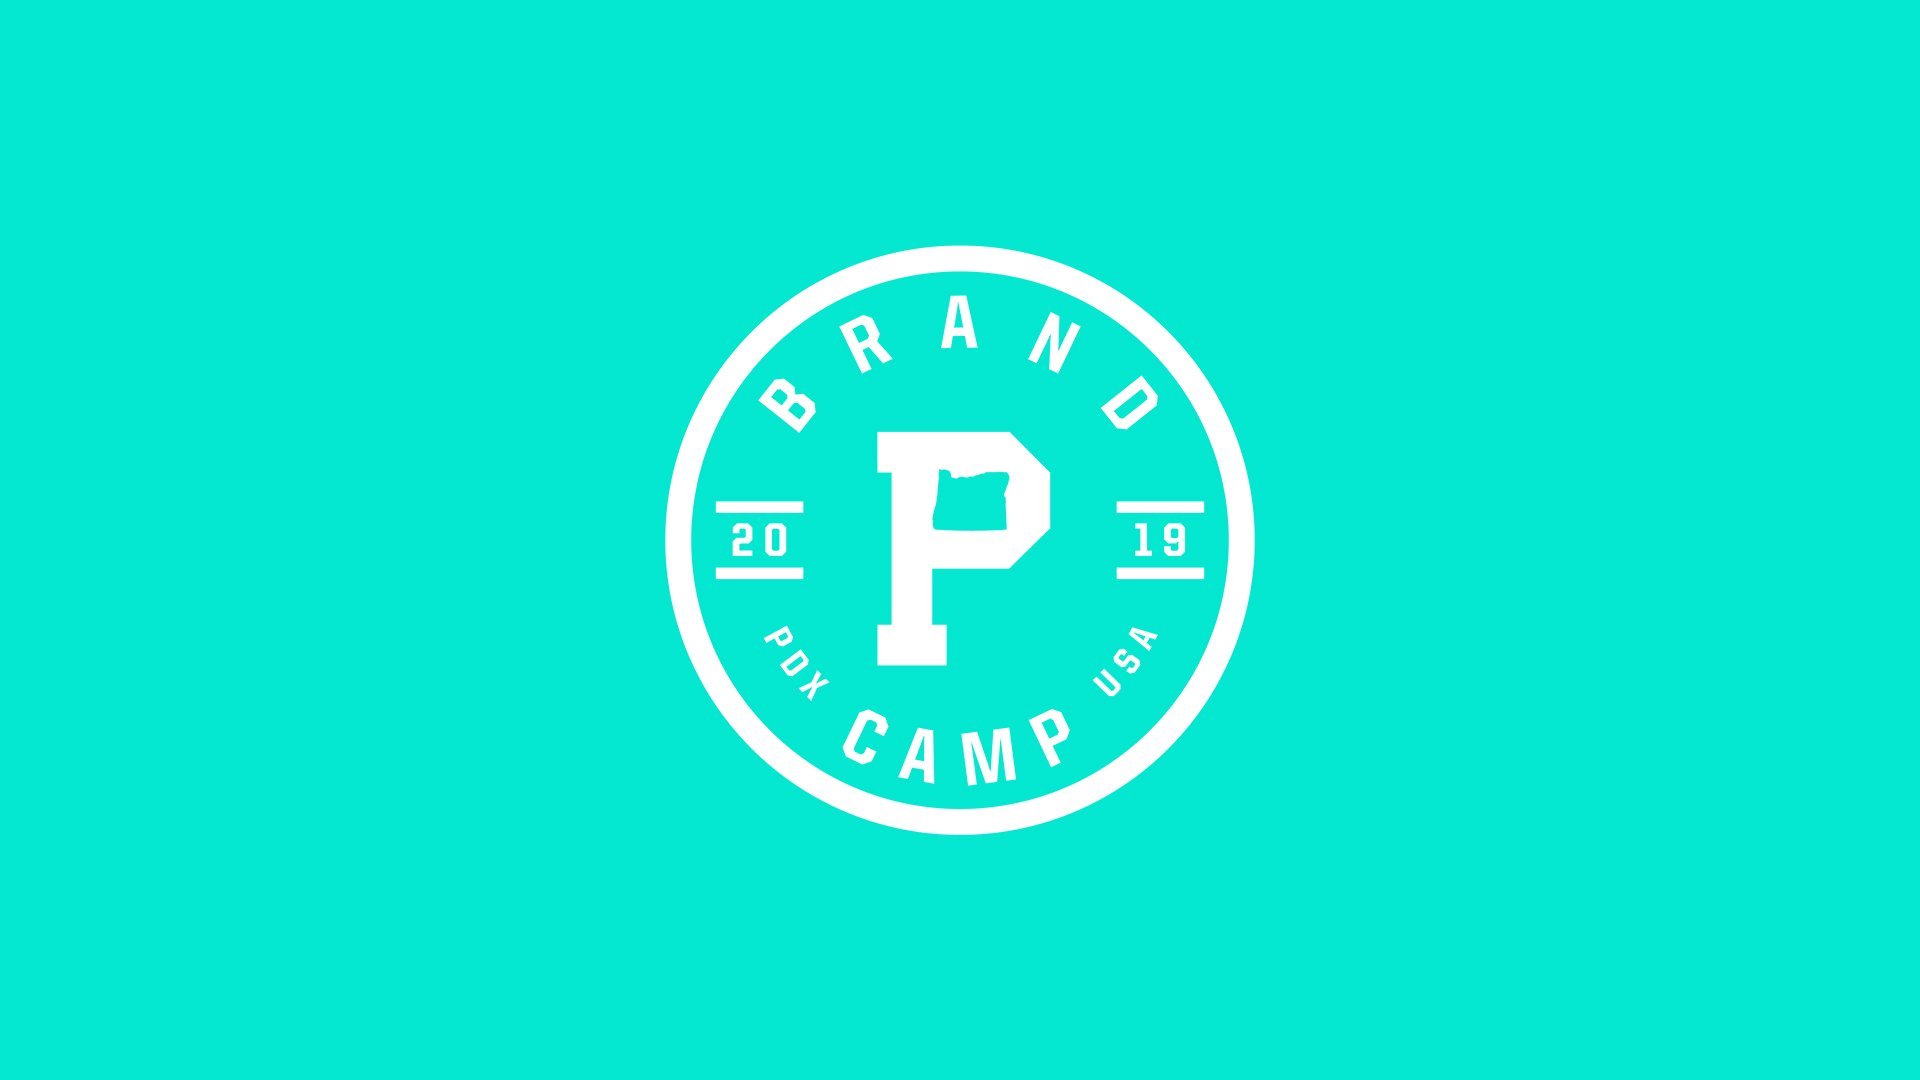 Brand Camp 2019 | Week 2 - Portland Gear